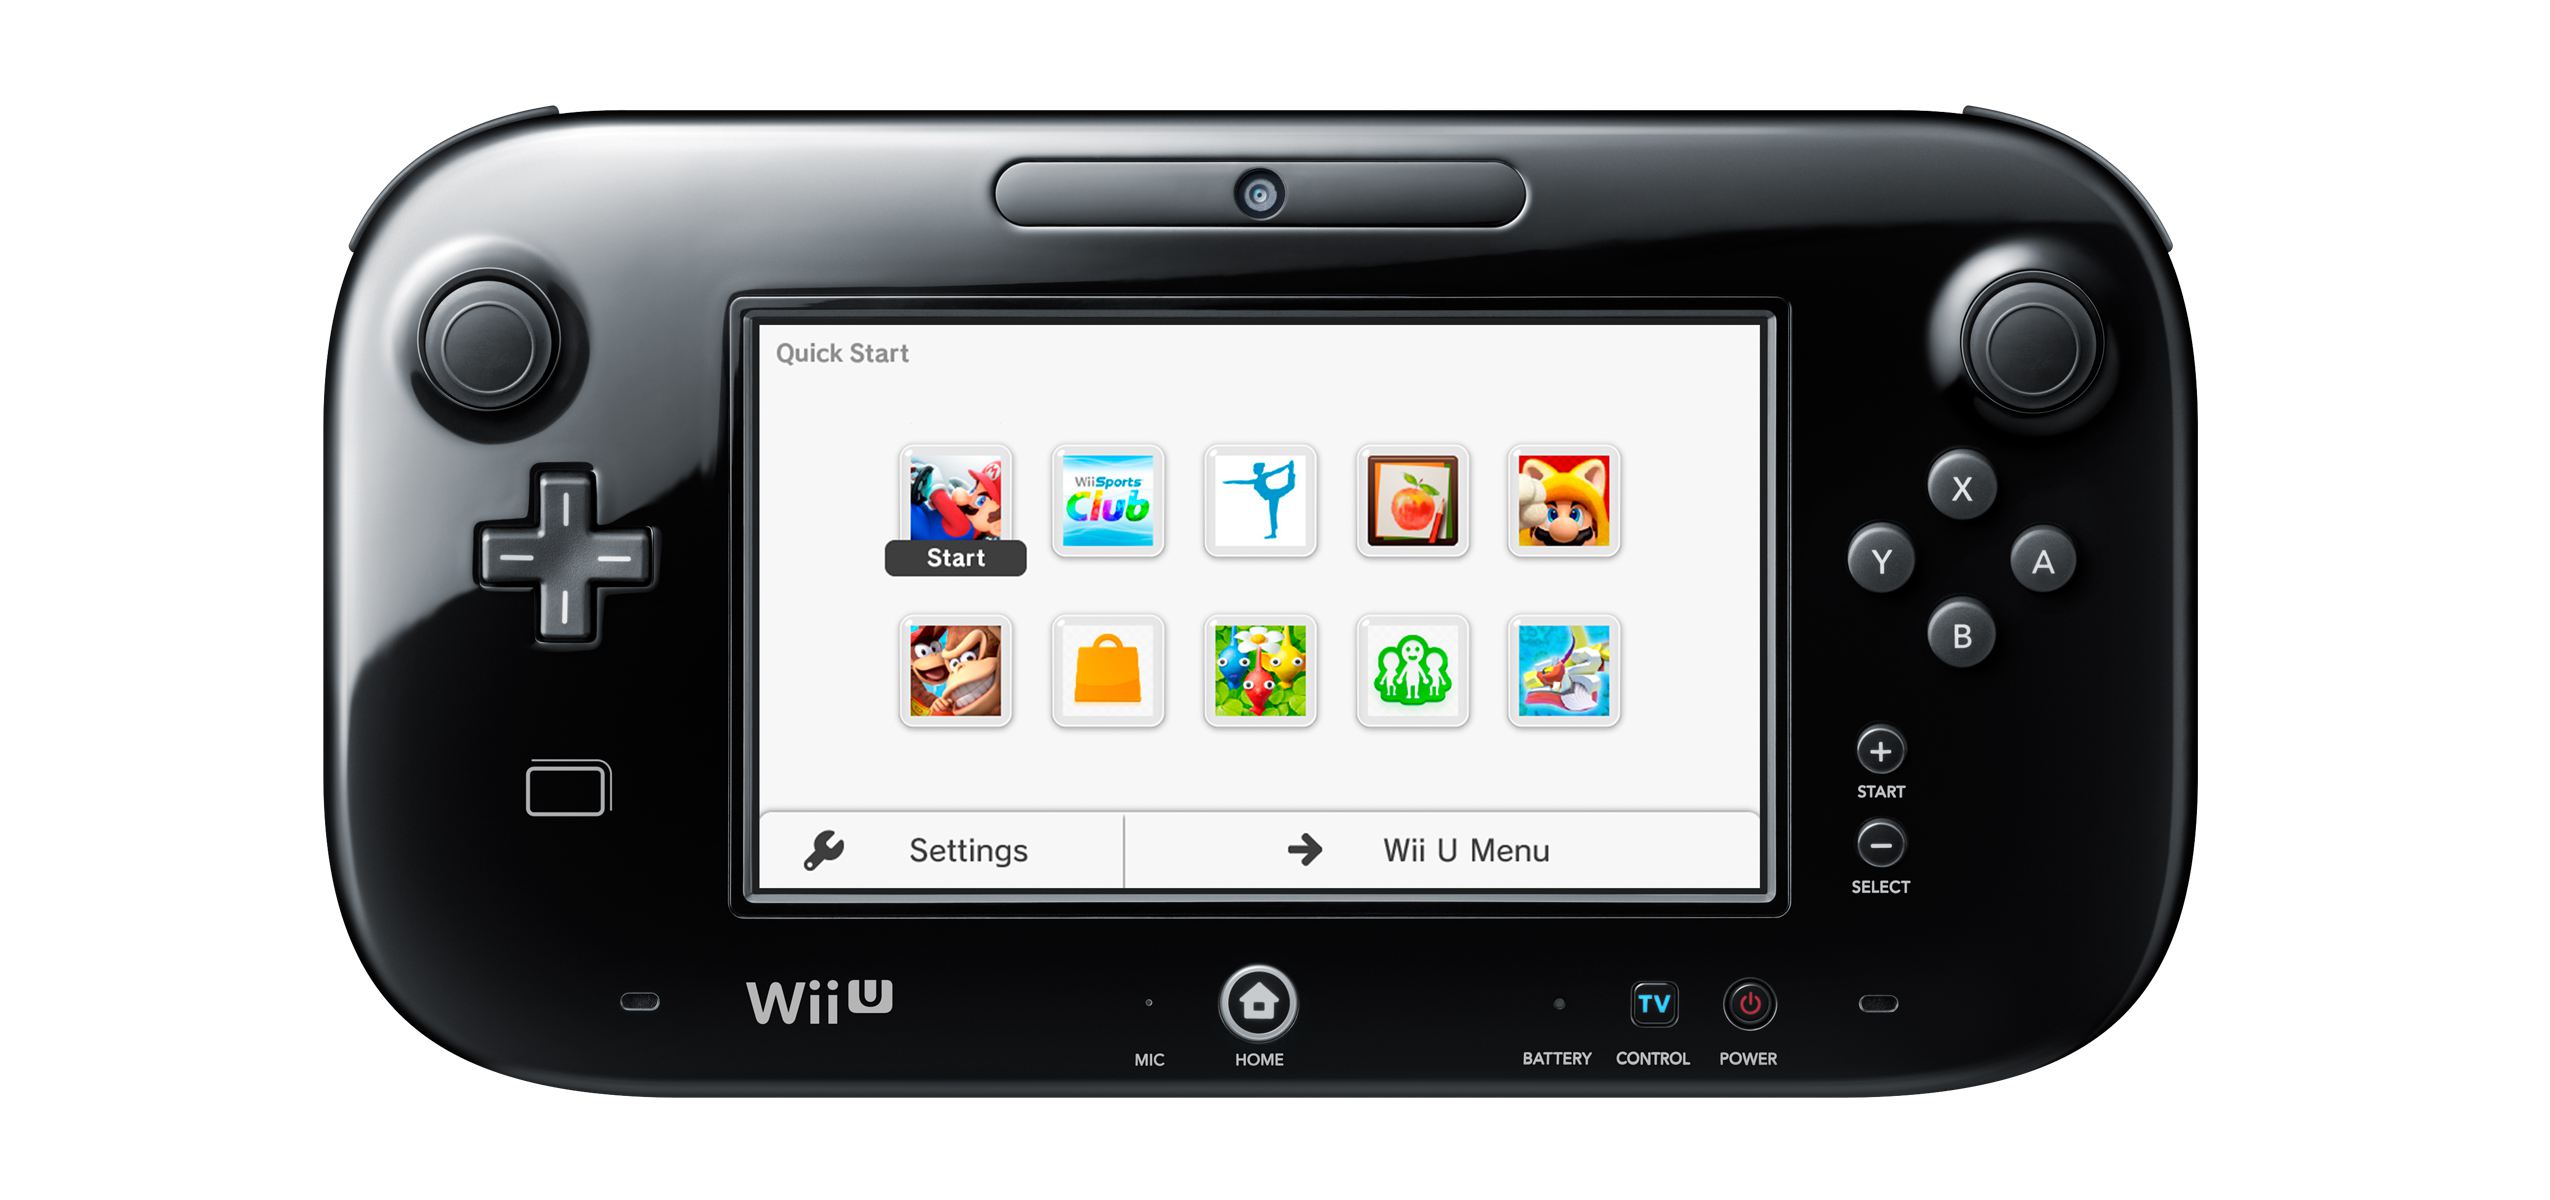 Nabídka rychlého spuštění gamepadu Wii U